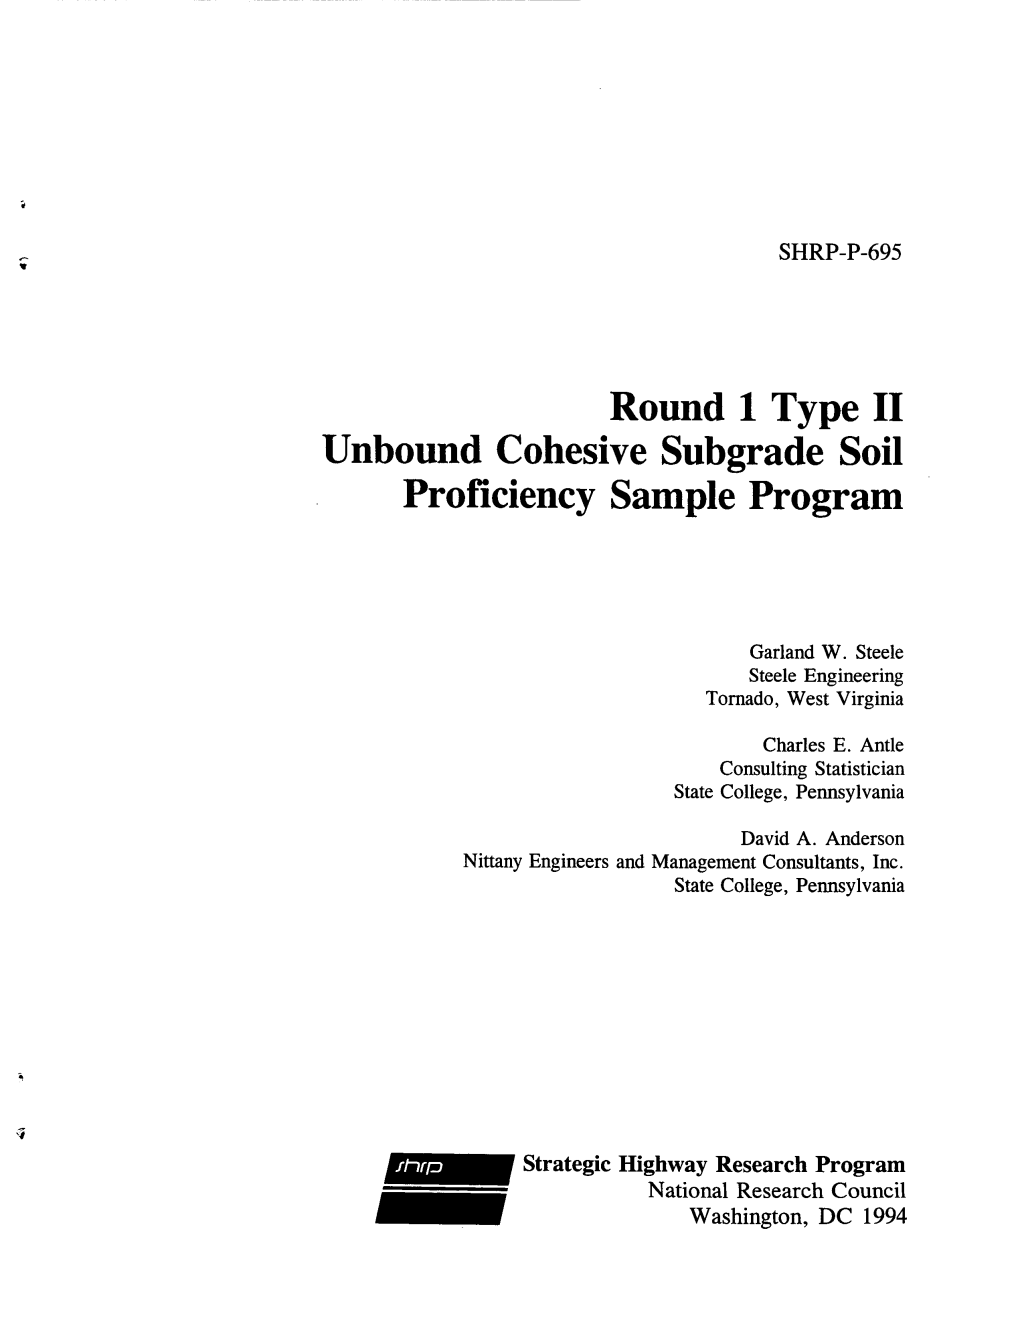 Round 1 Type II Unbound Cohesive Subgrade Soil Proficiency Sample Program